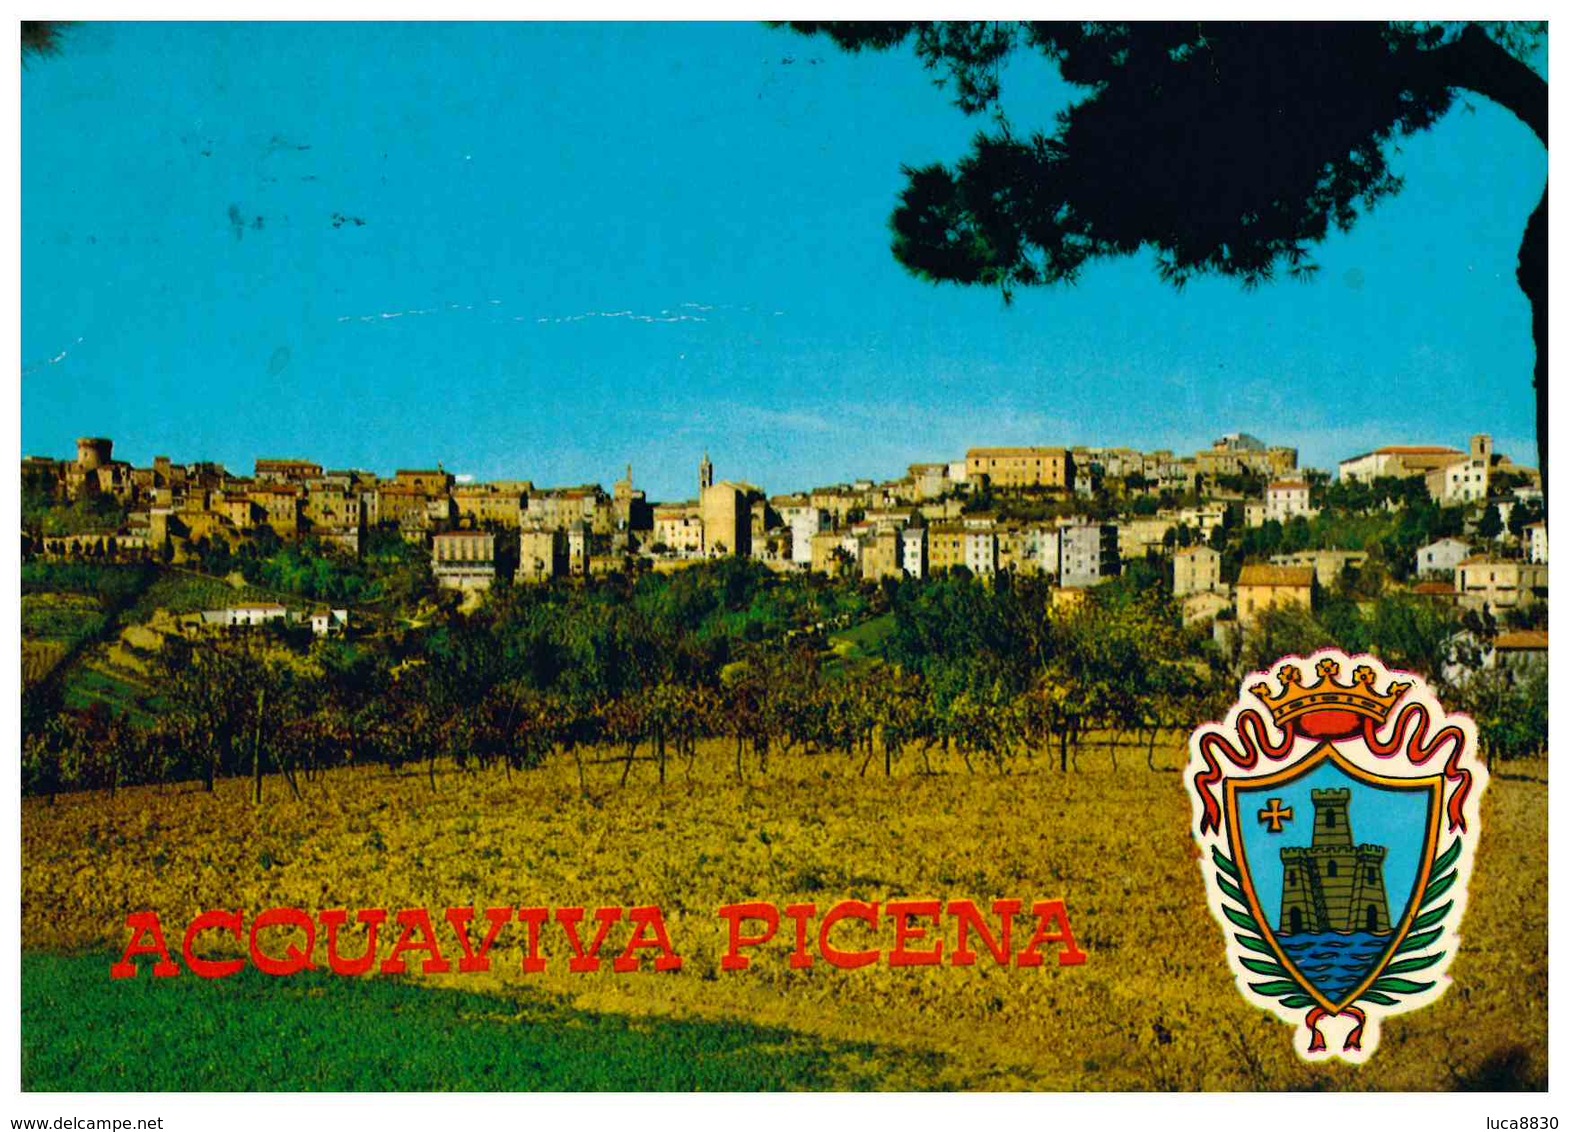 ACQUAVIVA PICENA - Ascoli Piceno